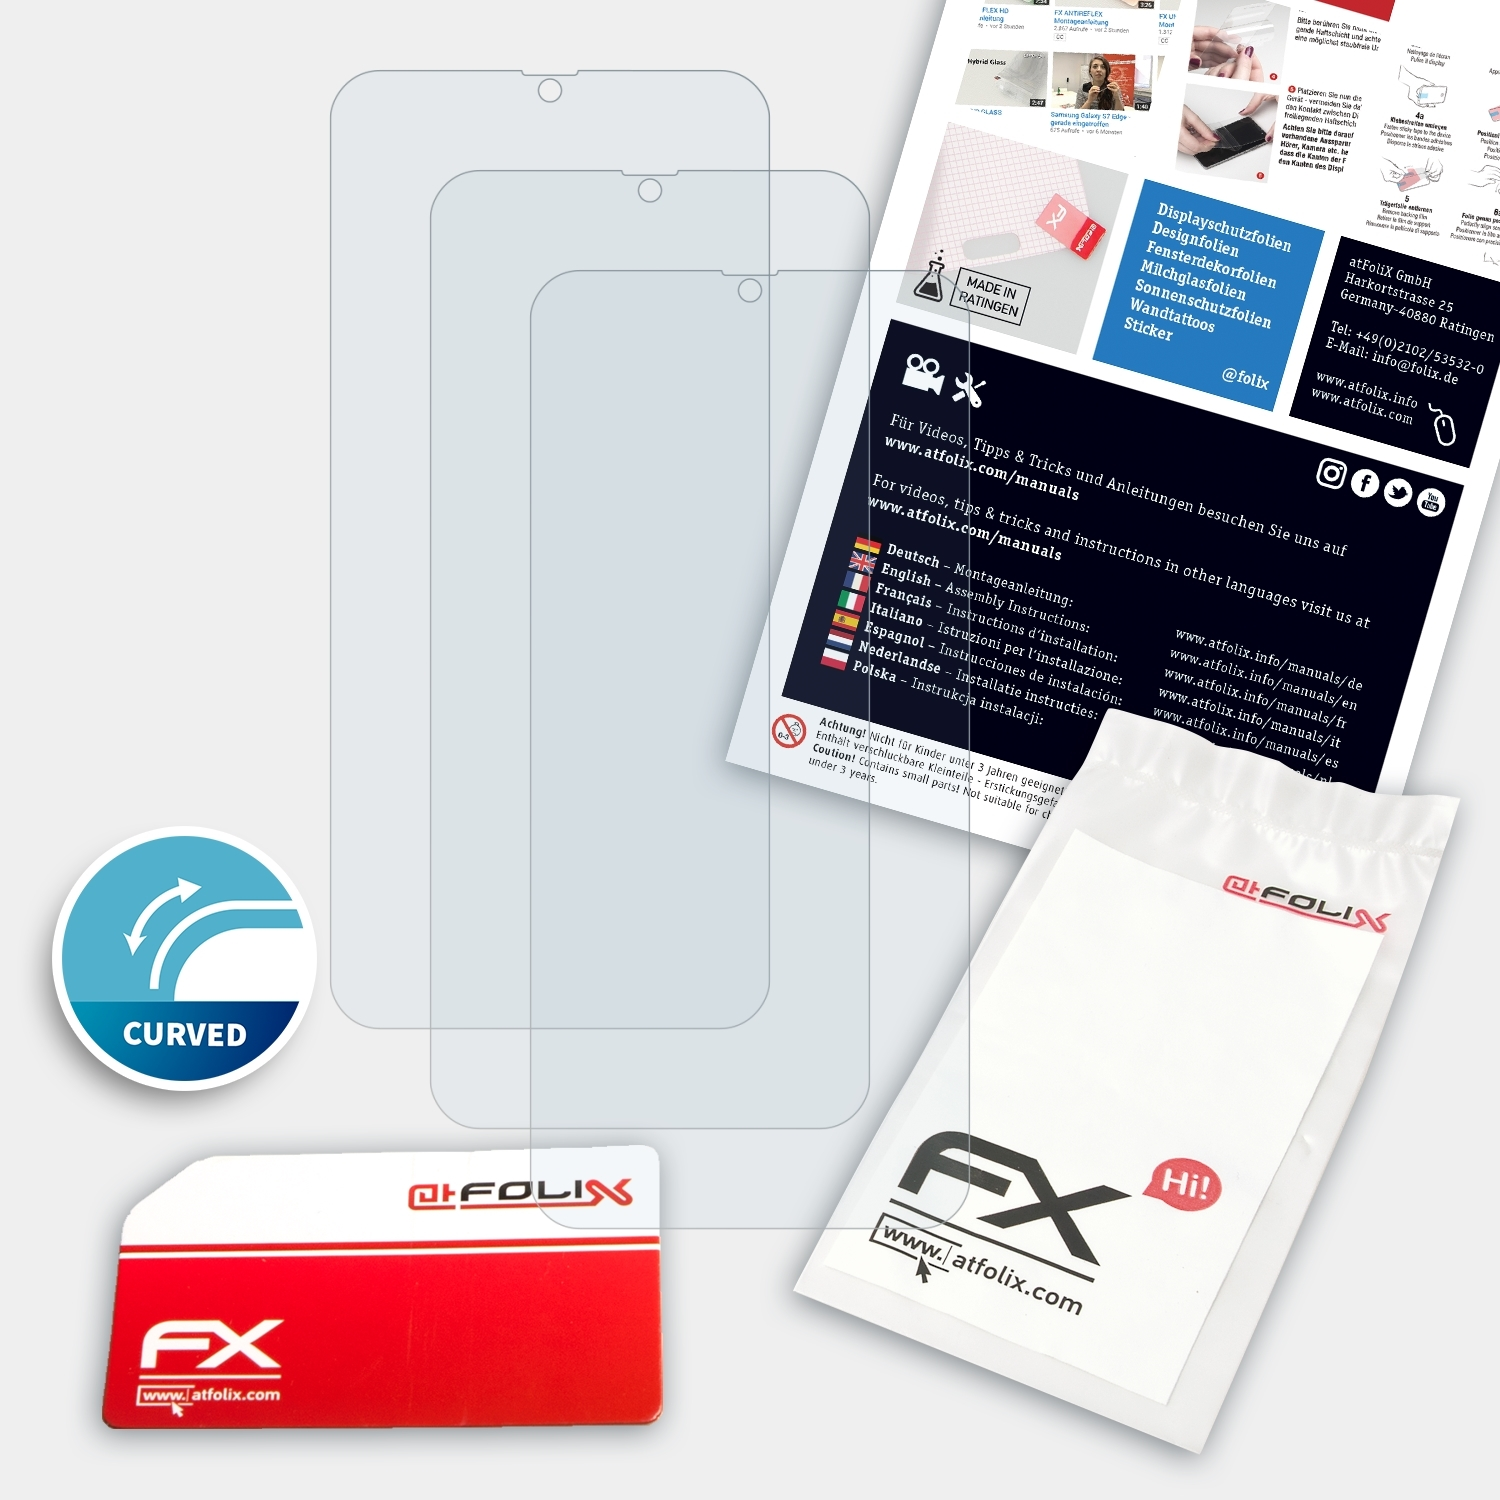 ATFOLIX 3x M21) Samsung Galaxy FX-ActiFleX Displayschutz(für